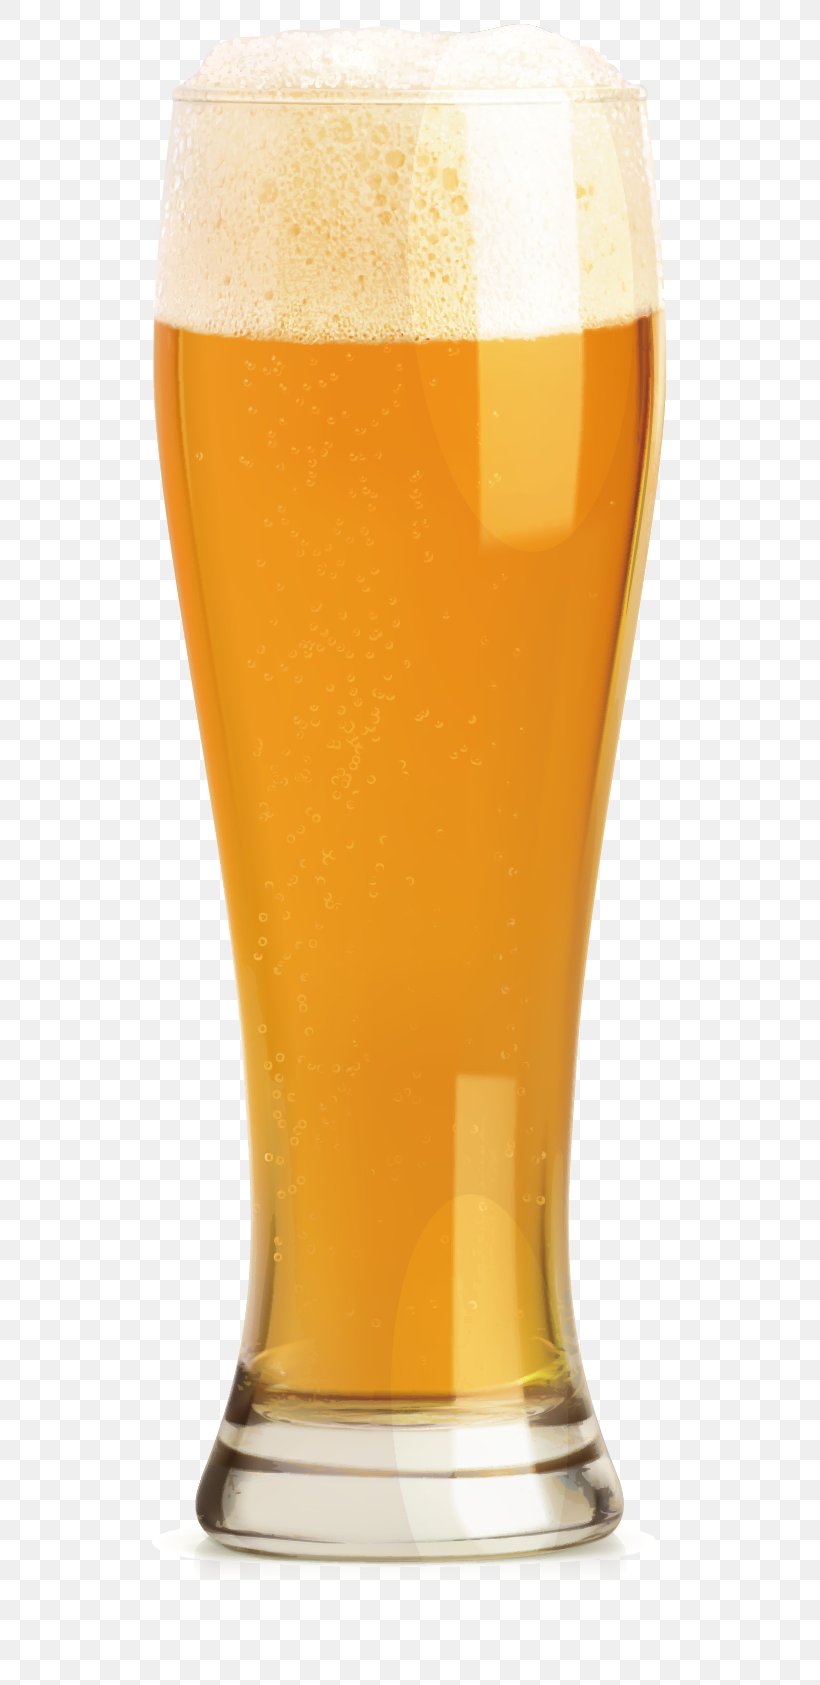 Wheat Beer Beer Glassware Draught Beer, PNG, 530x1685px, Wheat Beer, Beer, Beer Glass, Beer Glassware, Cup Download Free